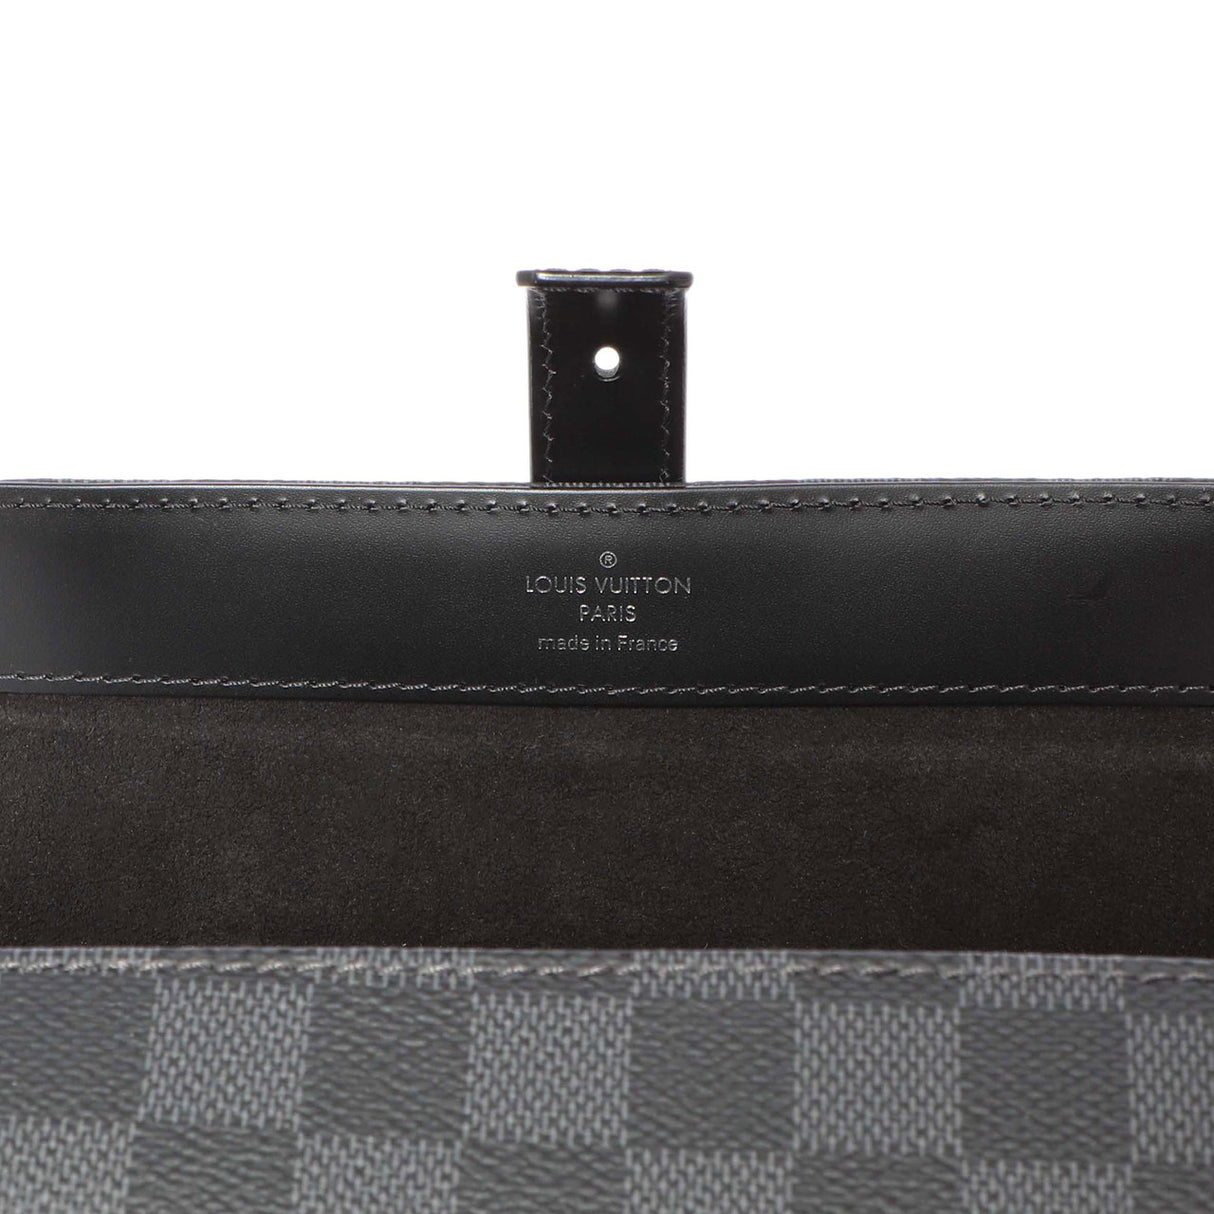 Louis Vuitton Damier Graphite 3 Watch  Case